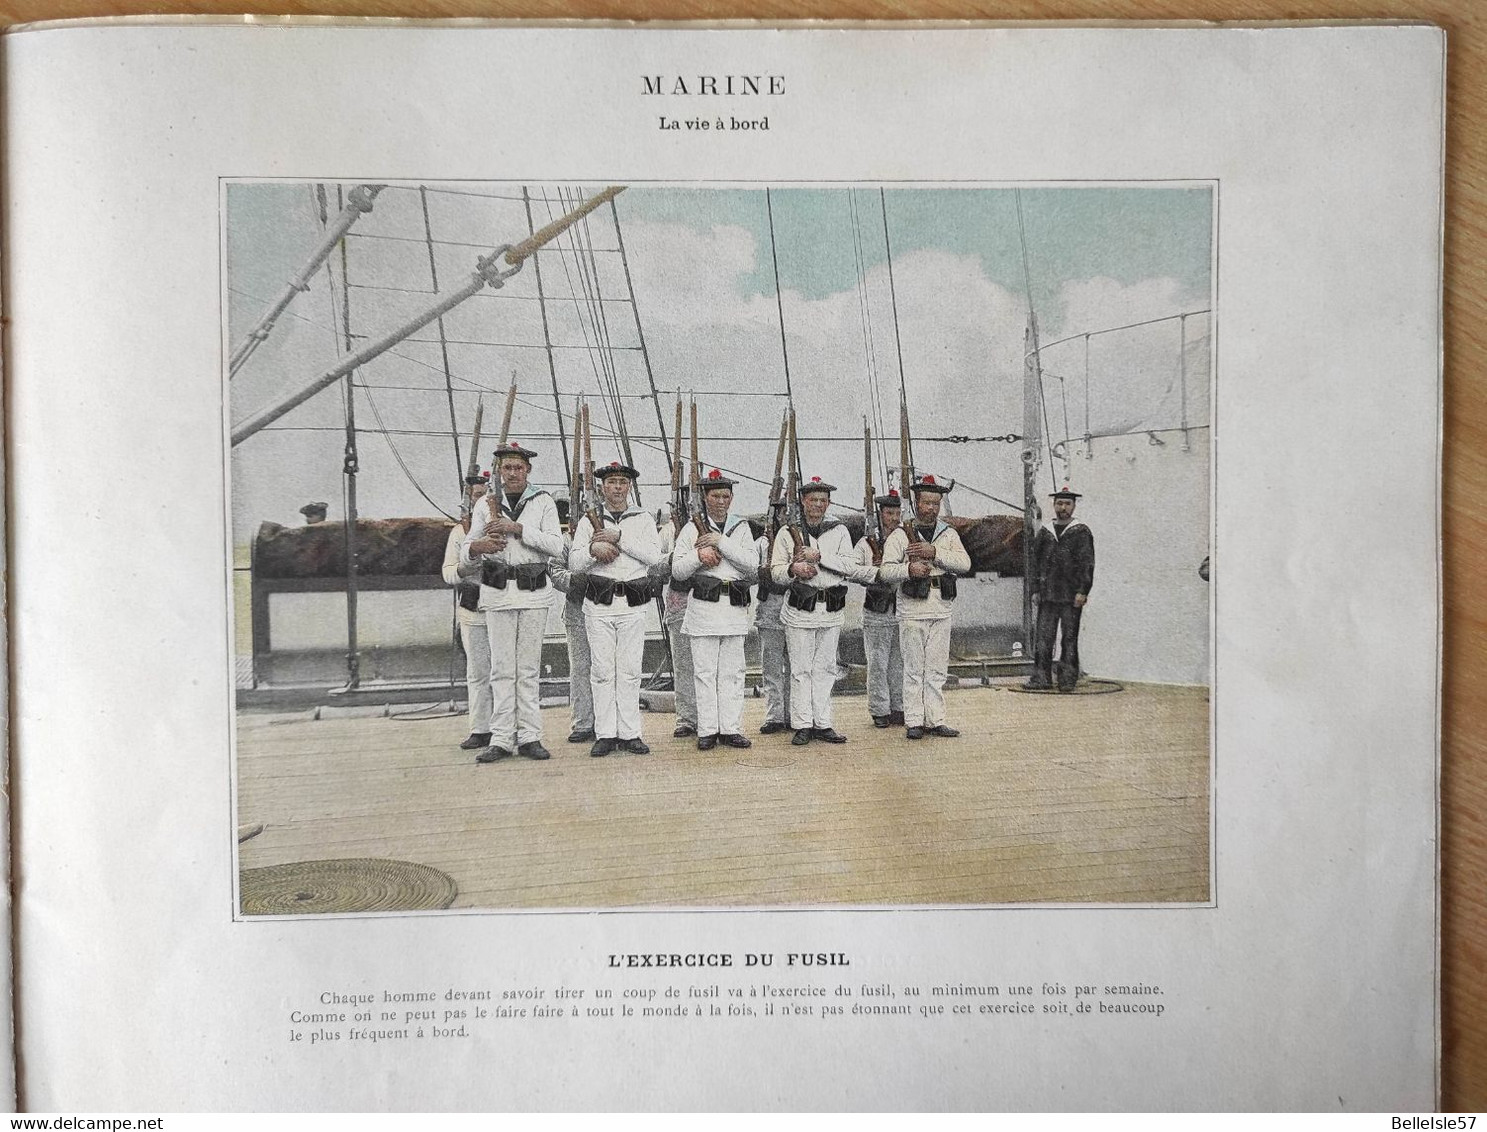 Anniversaire de la Grande Guerre - ALBUM Militaire - années1890